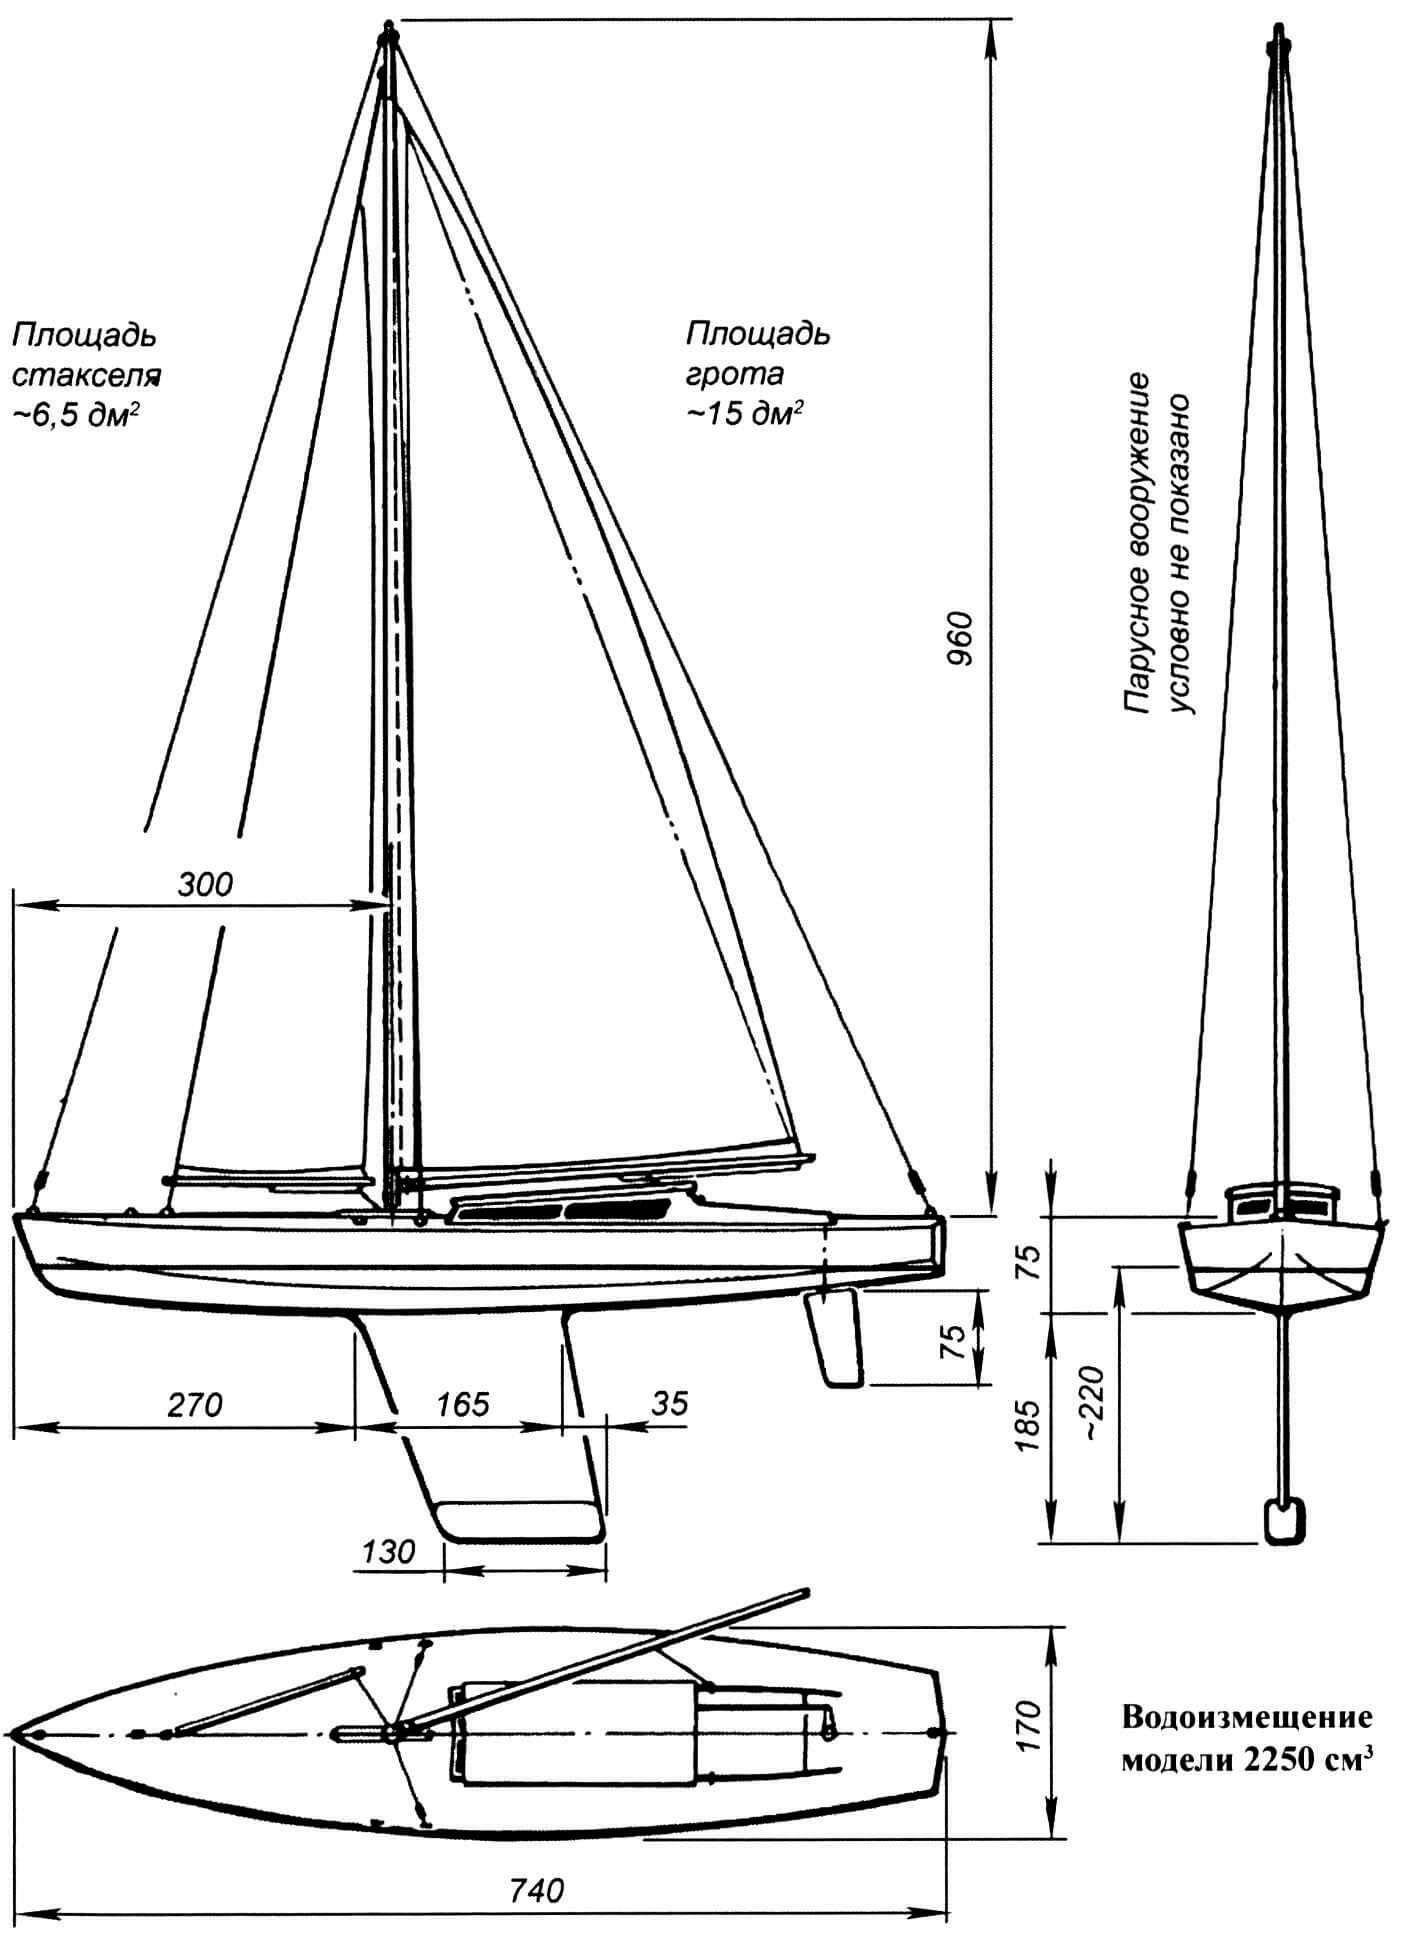 Основные геометрические данные модели яхты